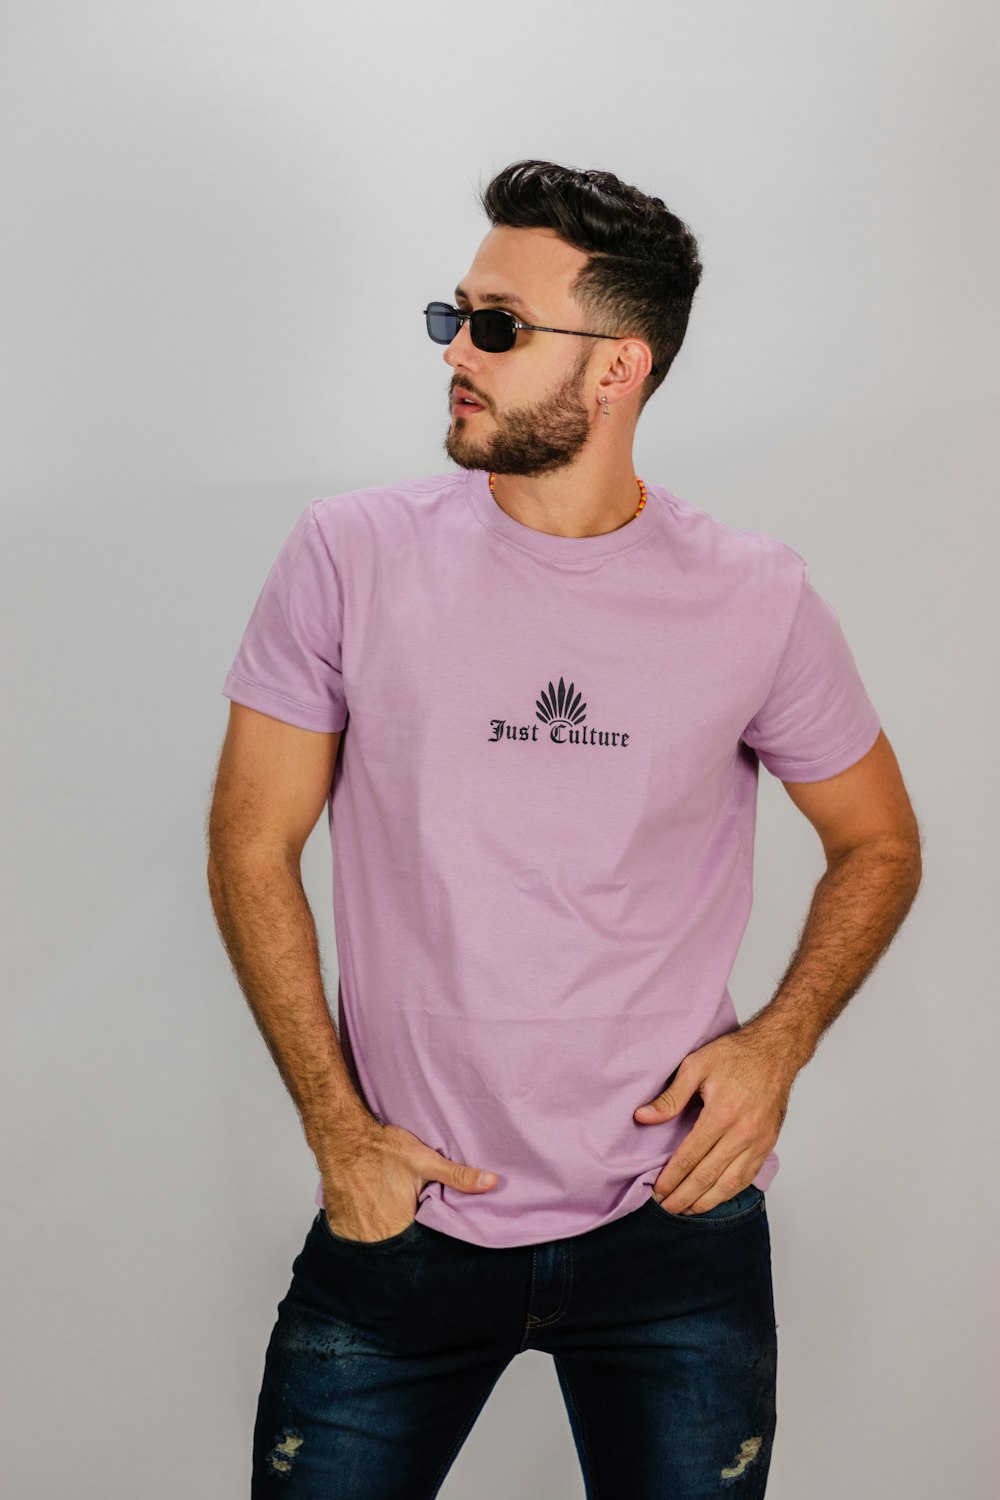 Homme en T-shirt rose à col rond portant des lunettes de soleil noires